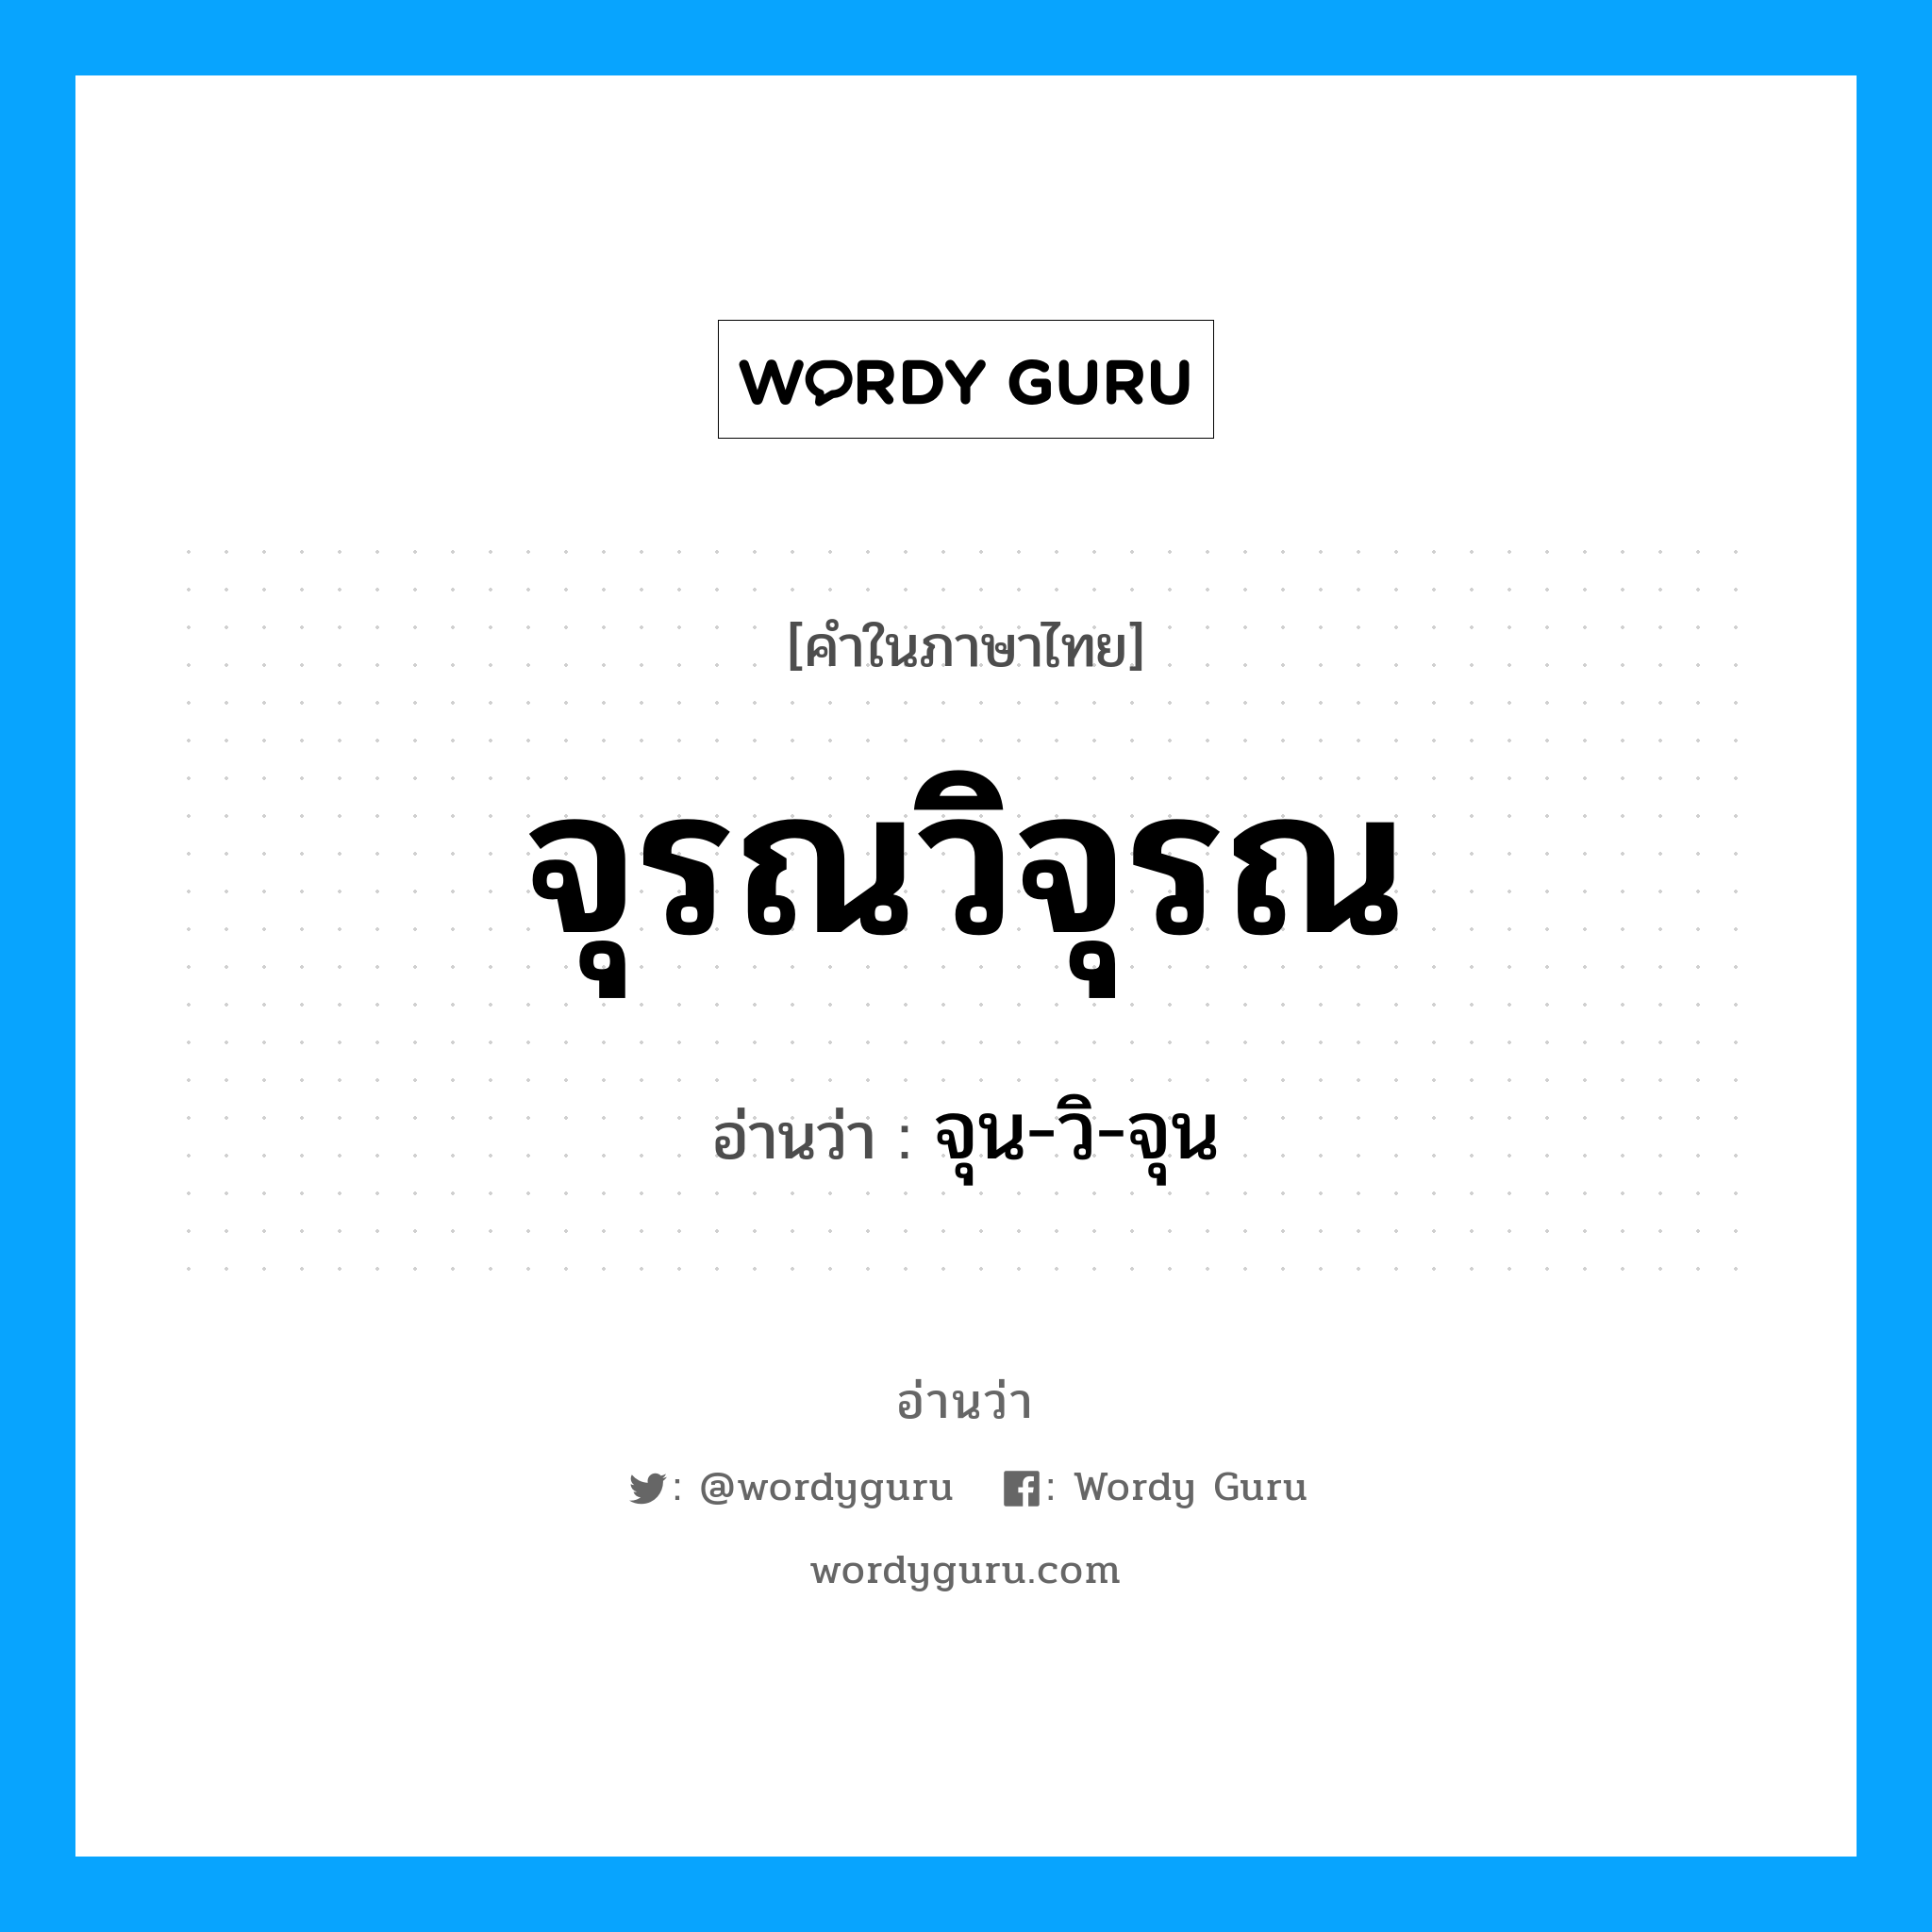 จุน-วิ-จุน เป็นคำอ่านของคำไหน?, คำในภาษาไทย จุน-วิ-จุน อ่านว่า จุรณวิจุรณ